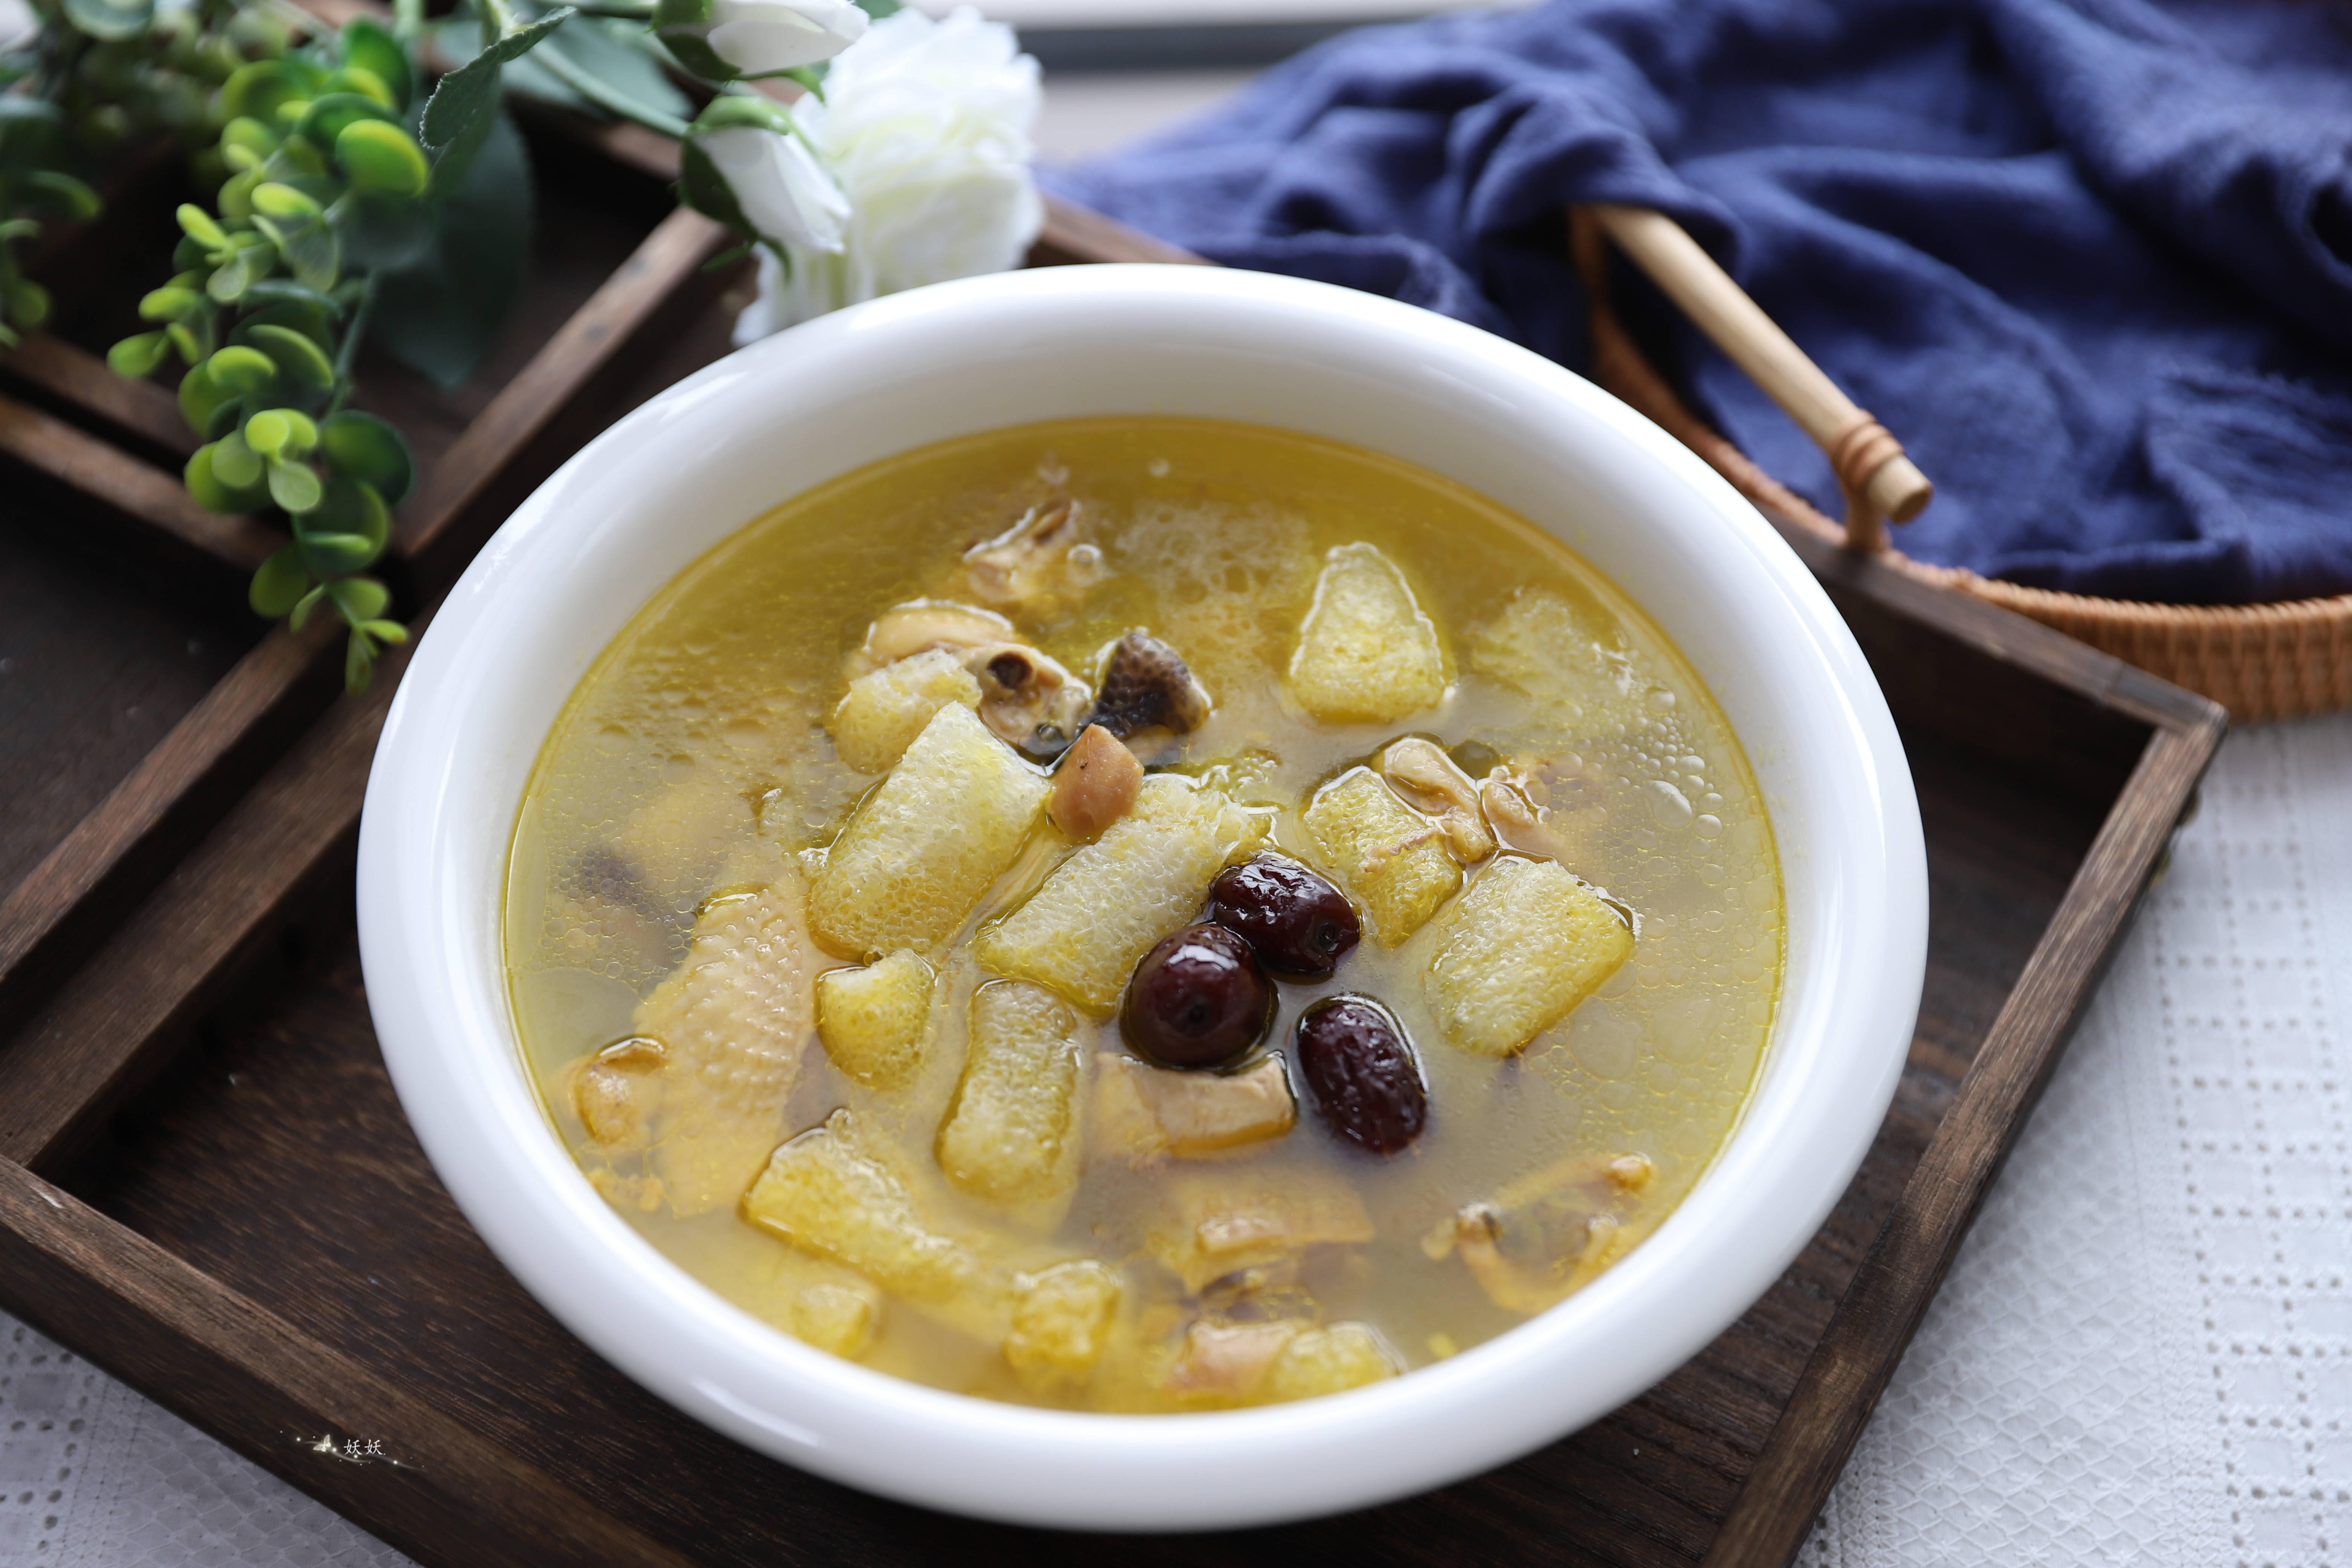 通常可以拿来煲汤,竹荪鸡汤是很鲜美滋补的营养汤,做法简单营养丰富